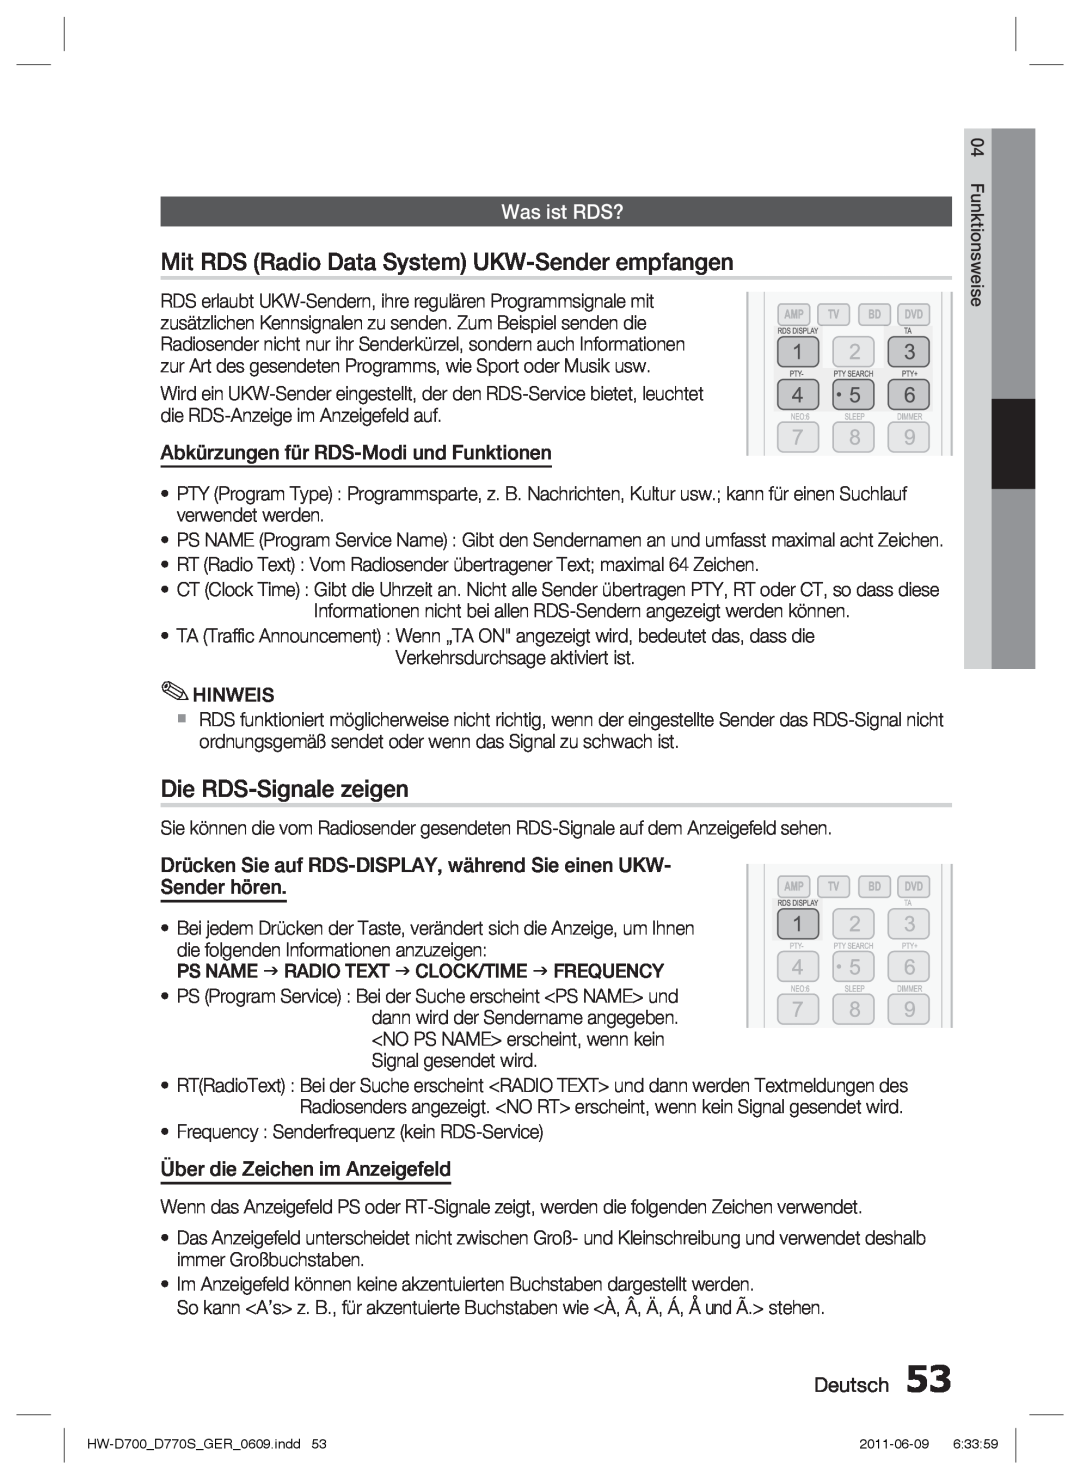 Samsung HW-D700/EN manual Mit RDS Radio Data System UKW-Sender empfangen, Die RDS-Signale zeigen, Was ist RDS?, Deutsch 